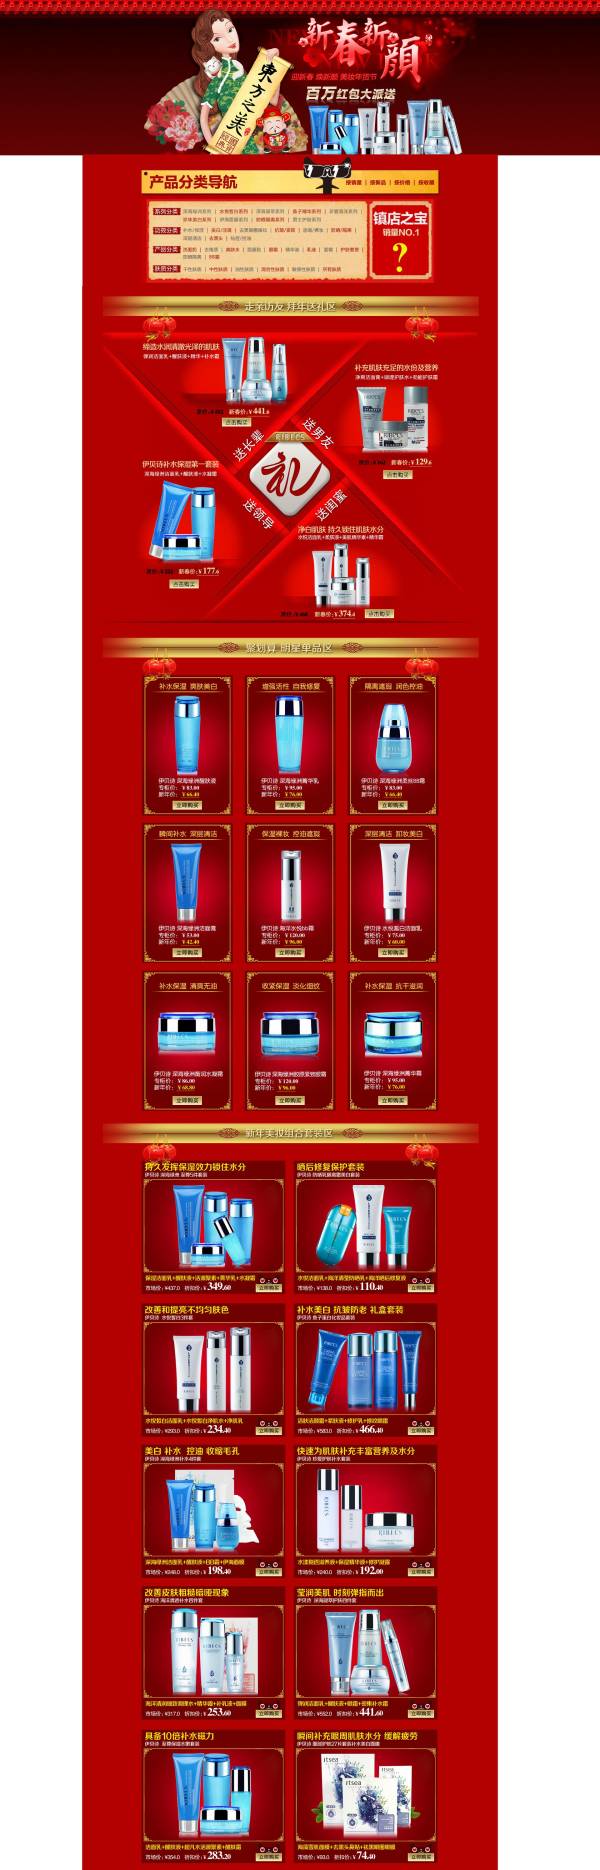 新年淘宝店铺化妆品促销活动专题页面模板psd下载